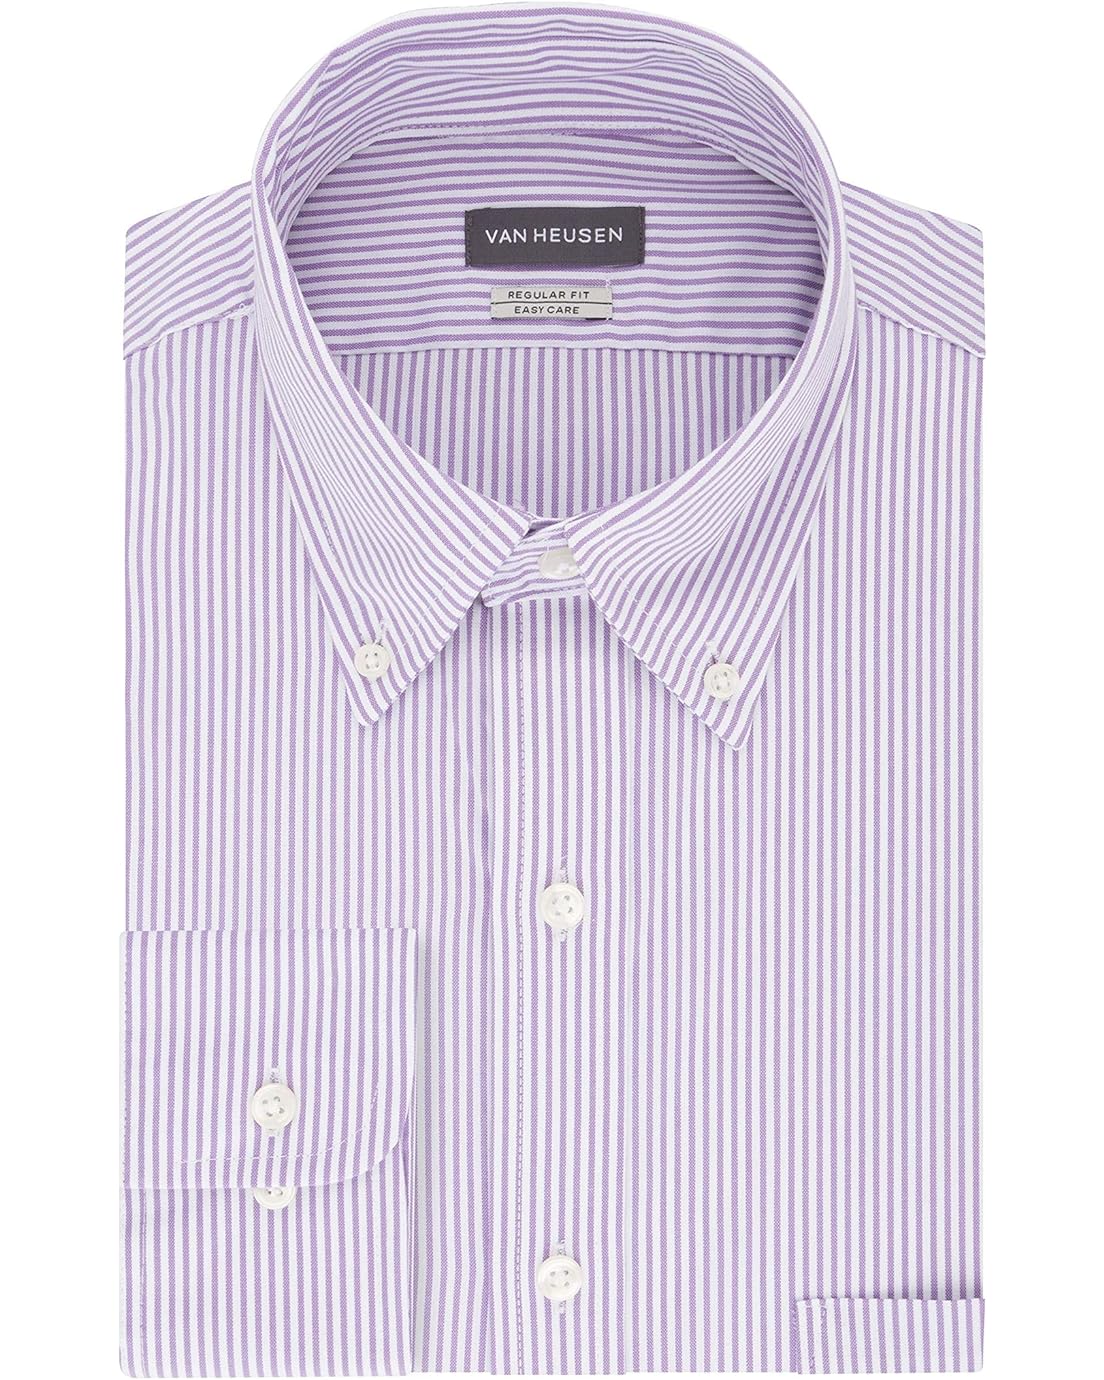 Van Heusen Mens Dress Shirt Regular Fit Pinpoint Stripe